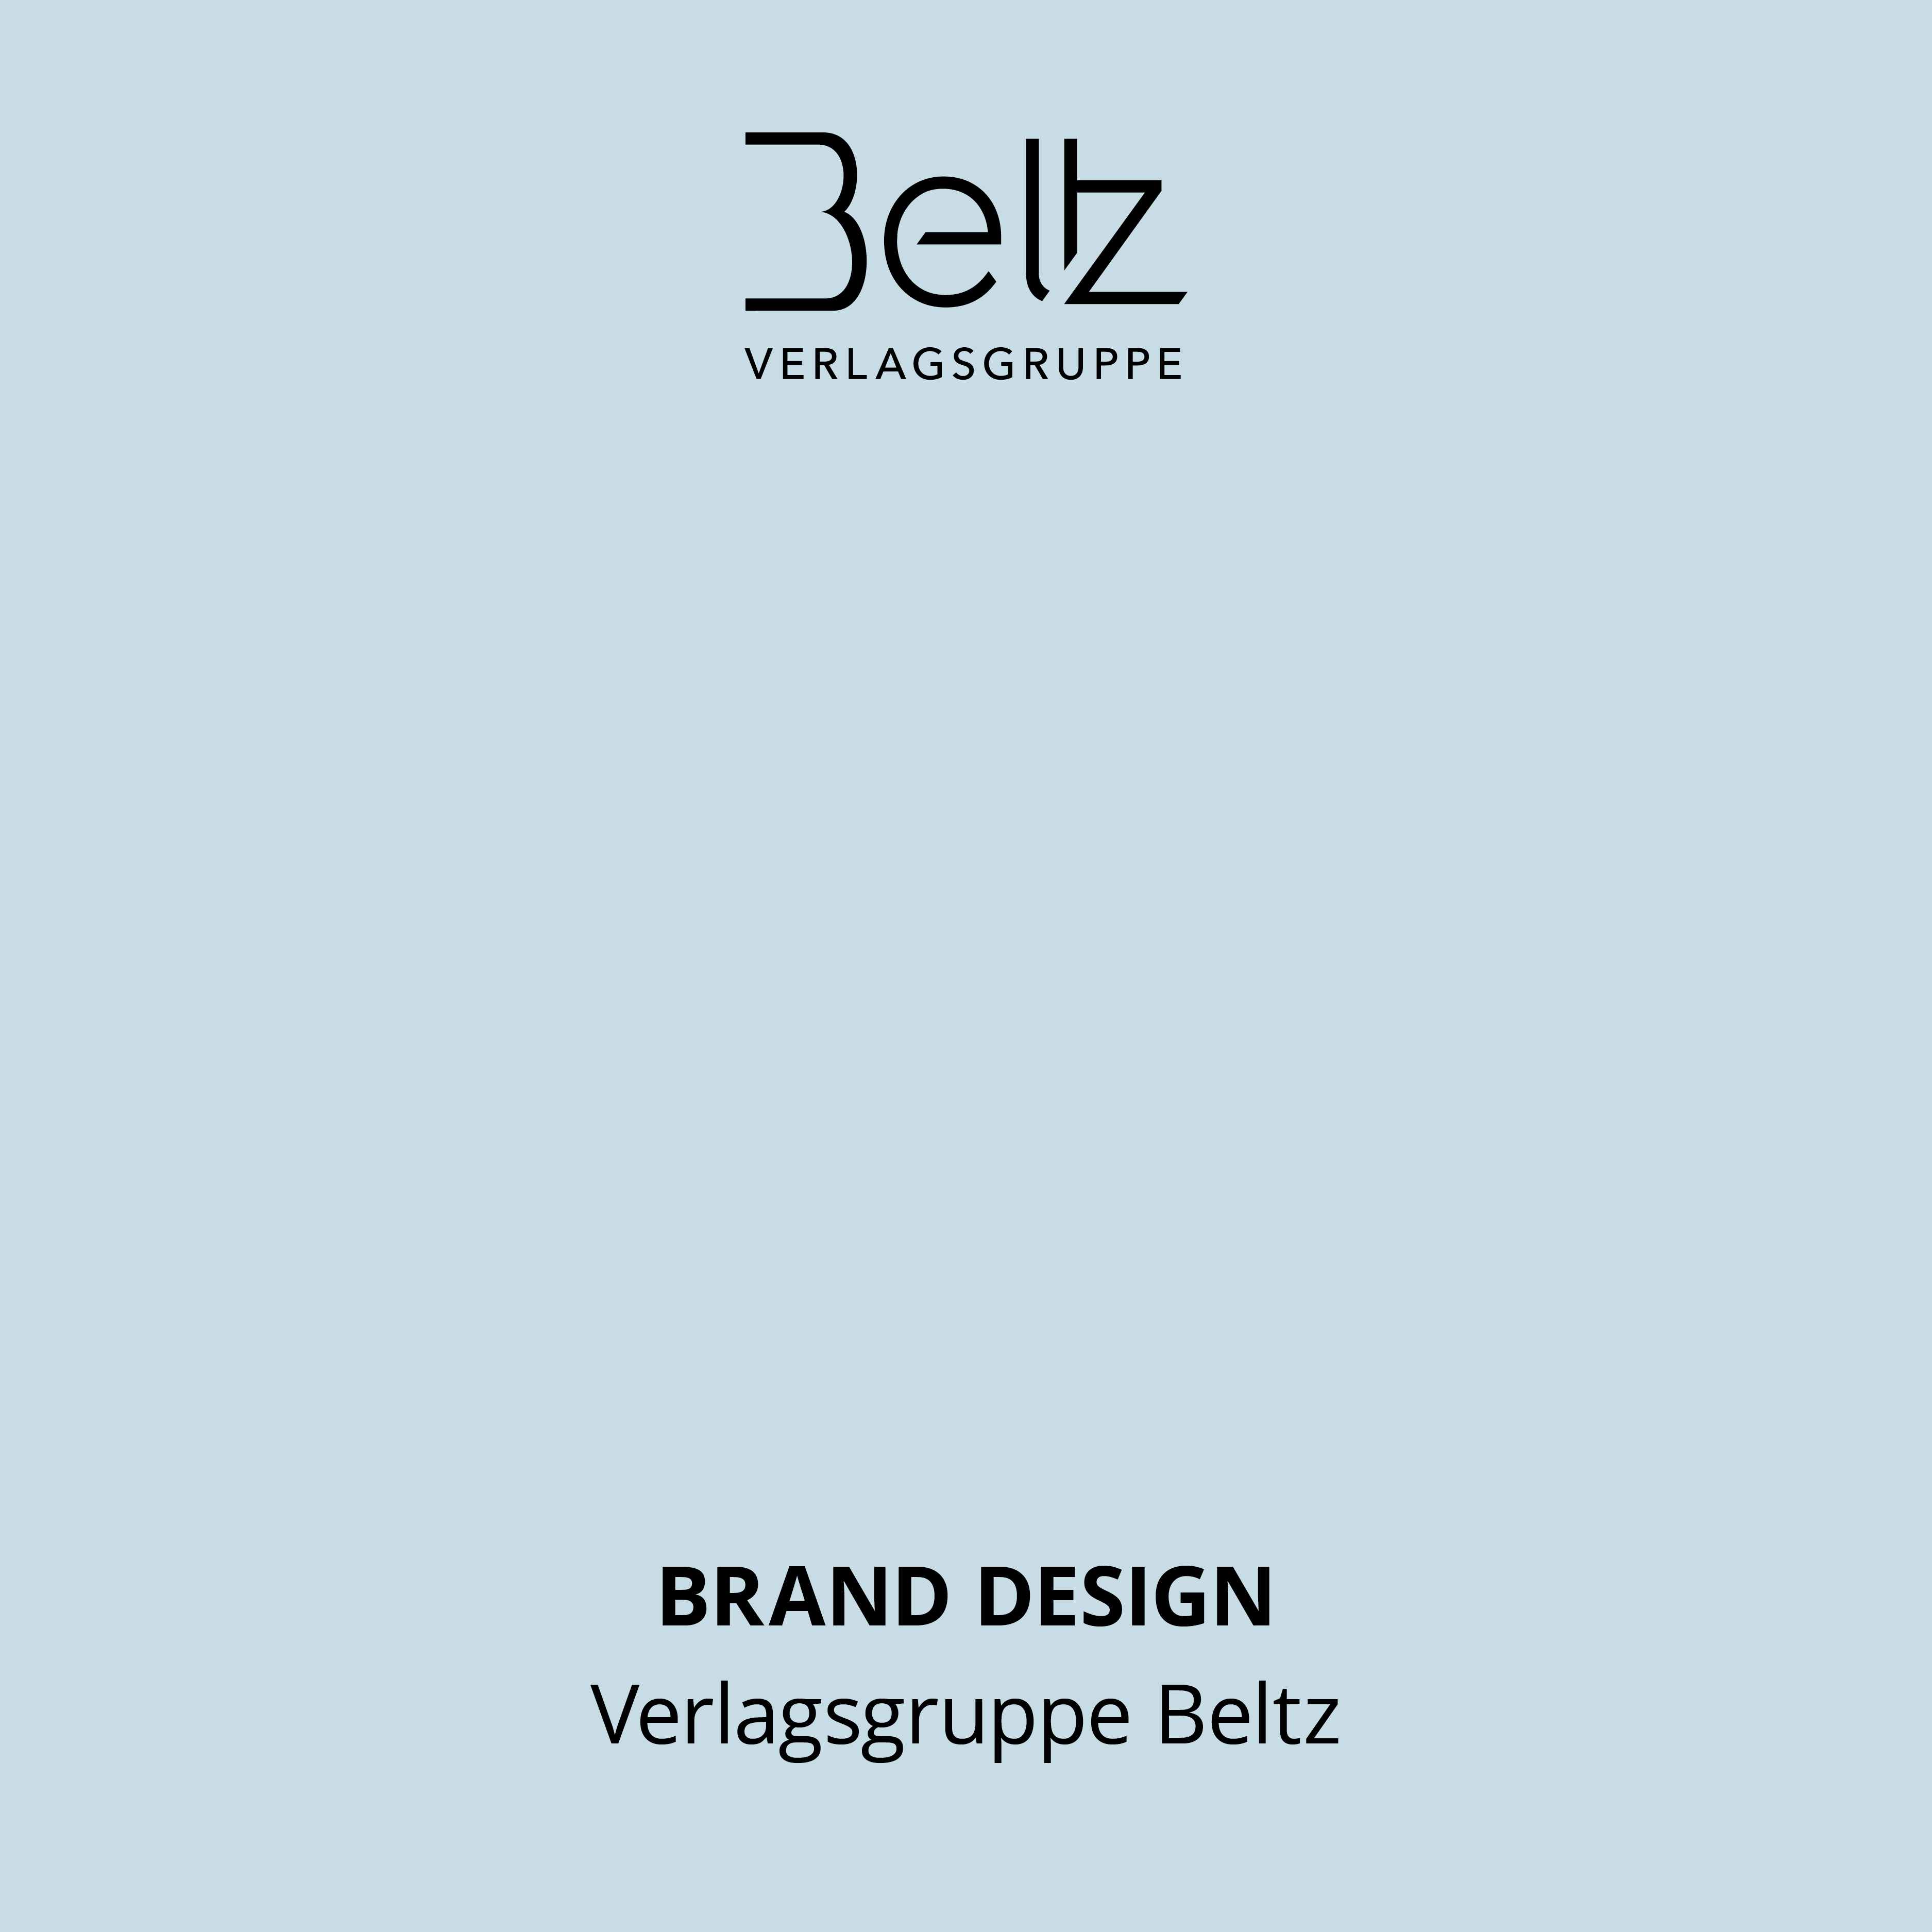 Projekt Verlagsgruppe Beltz